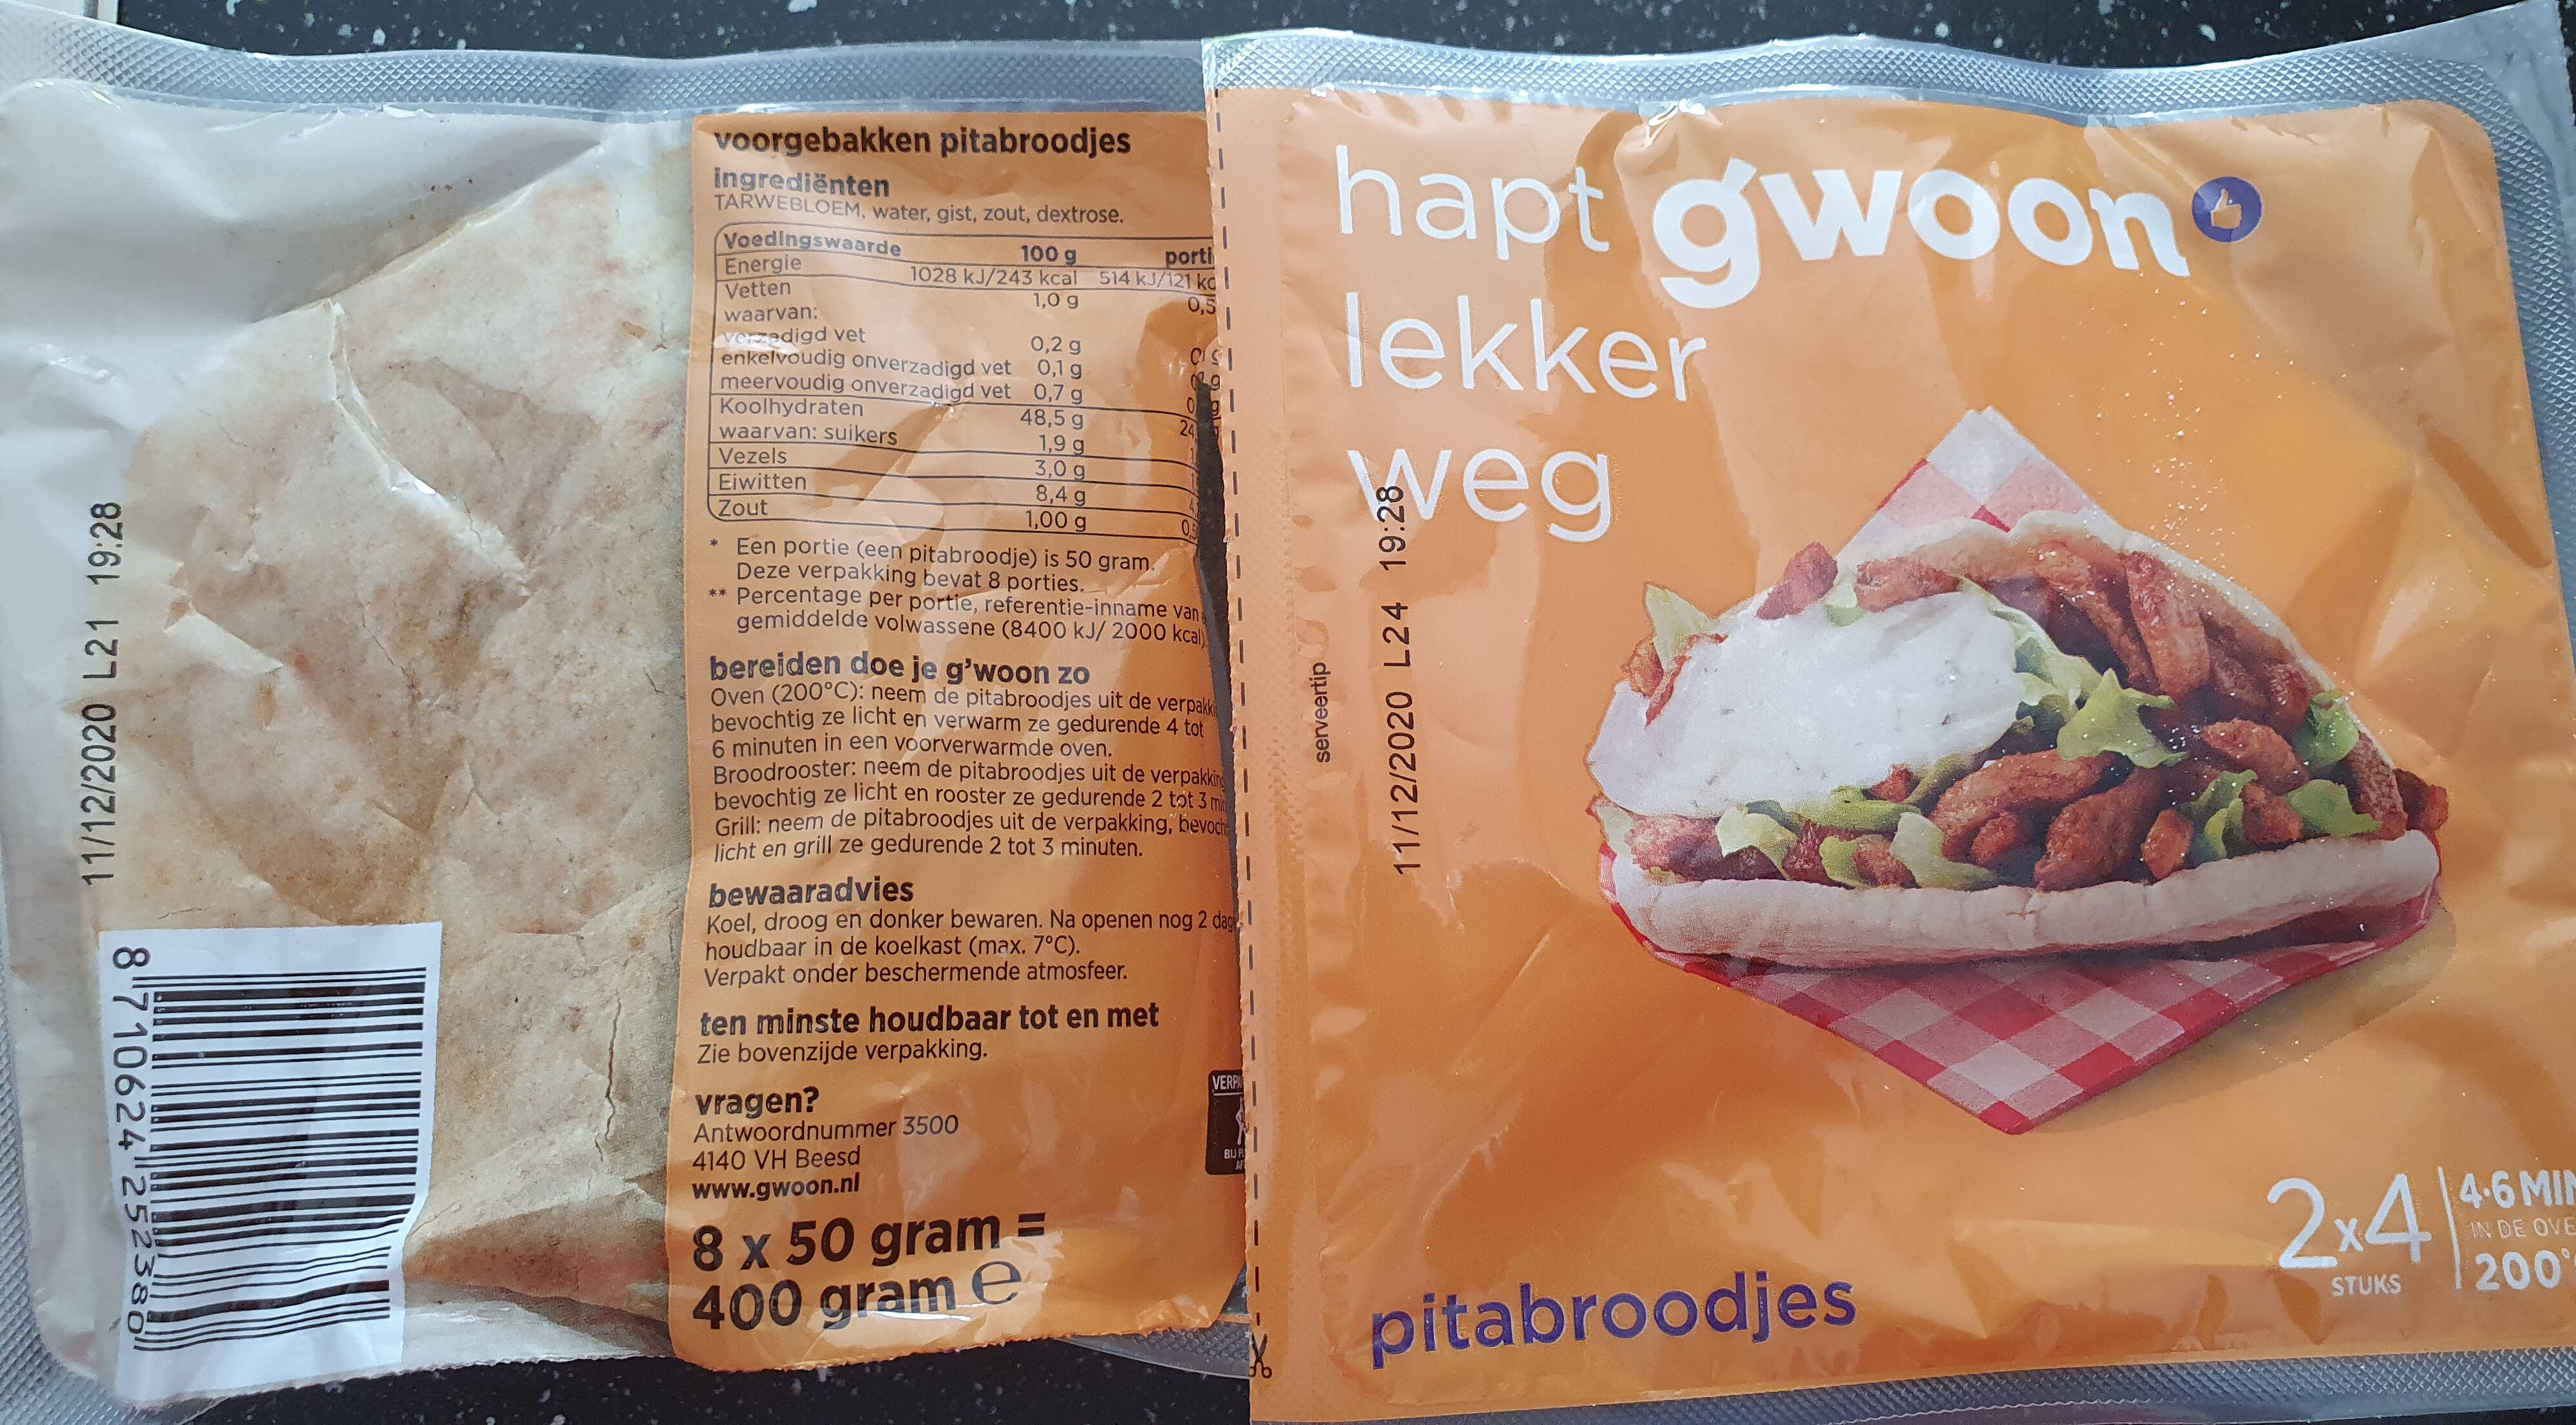 Pitabroodjes 2×4 stuks á 50 g - Product - nl